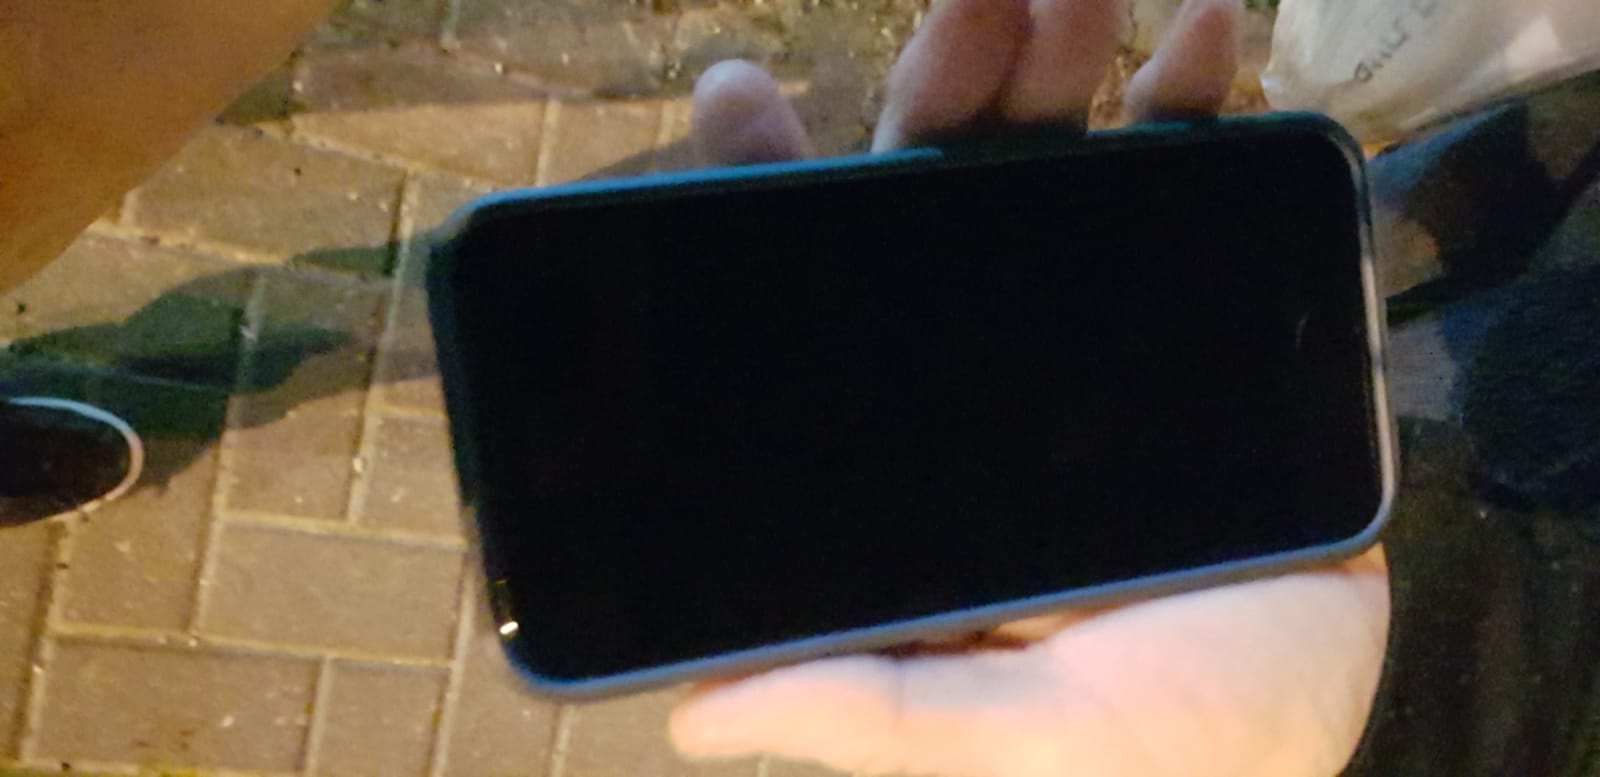 תמונה 2 ,איפון sE למכירה בתל אביב סלולרי  סמארטפונים